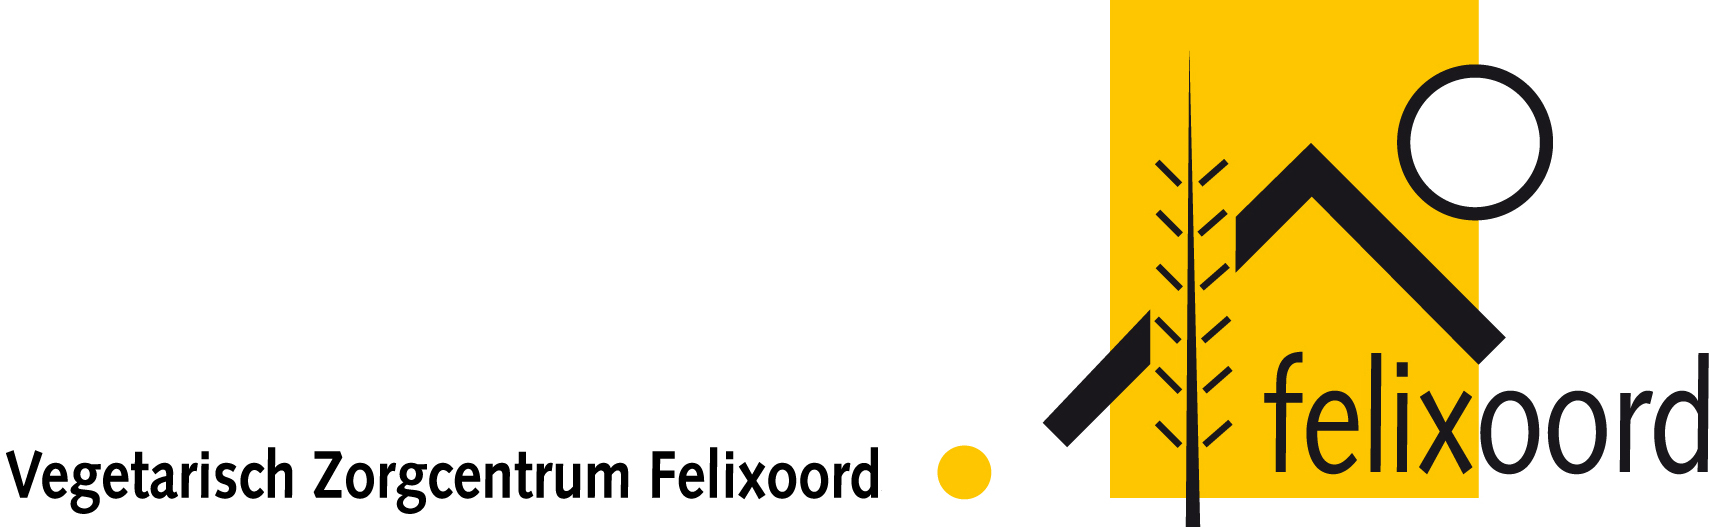 Felixoord